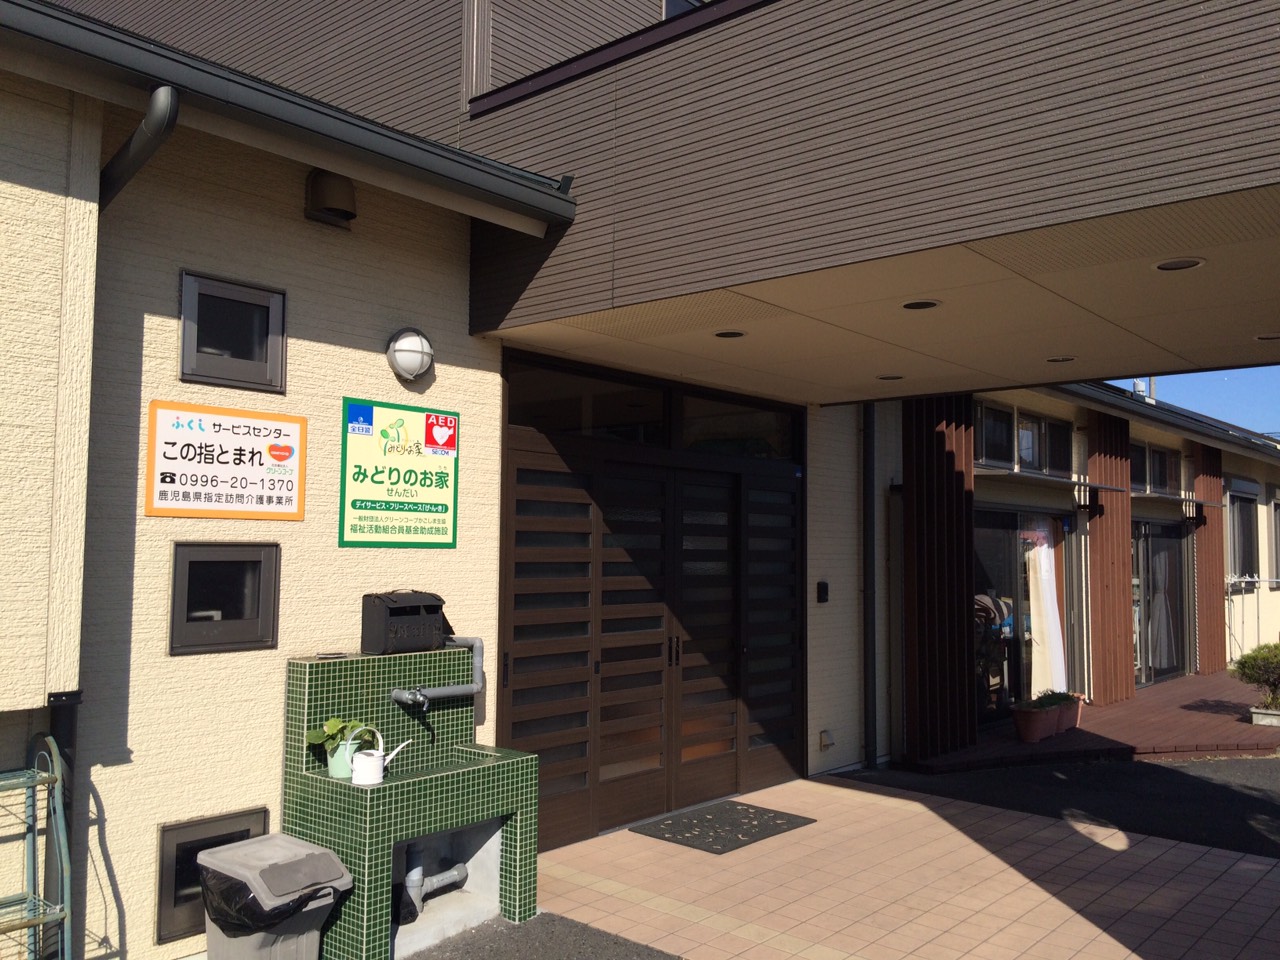 この指とまれの事務所は、３号線「上川内」交差点を新田神社方向に入り、レンタルのニッケンを過ぎて最初の交差点を右側すると、右側にあります。